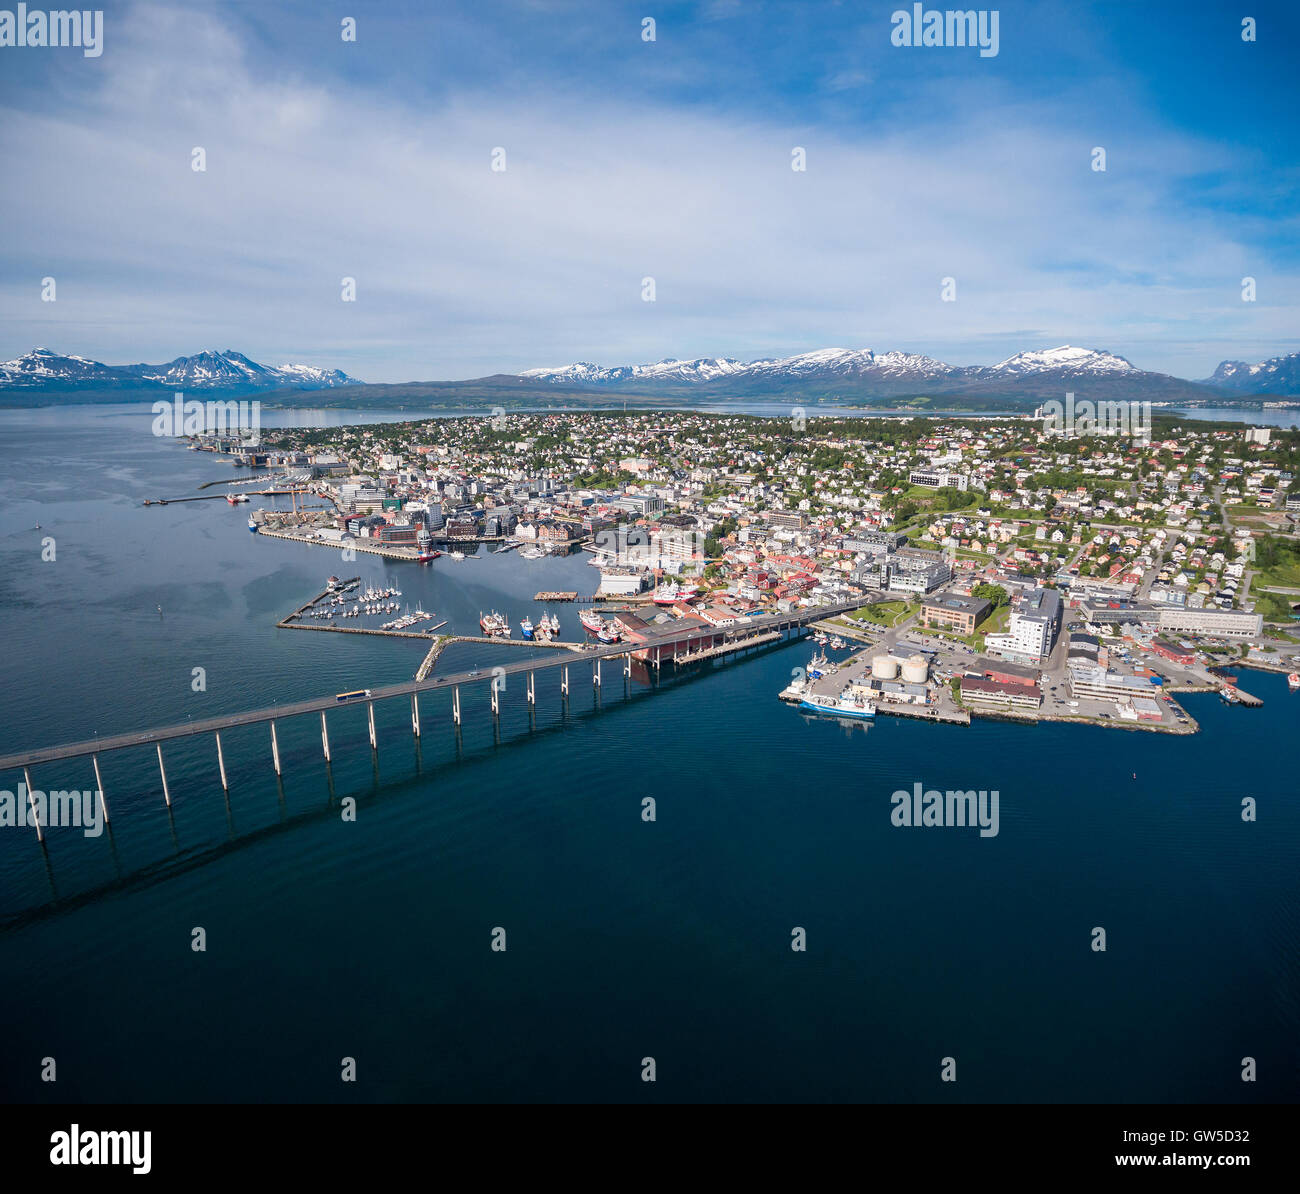 Ponte della città Tromso, Norvegia la fotografia aerea. Tromso è considerata la città più settentrionale del mondo con una popolazione abov Foto Stock